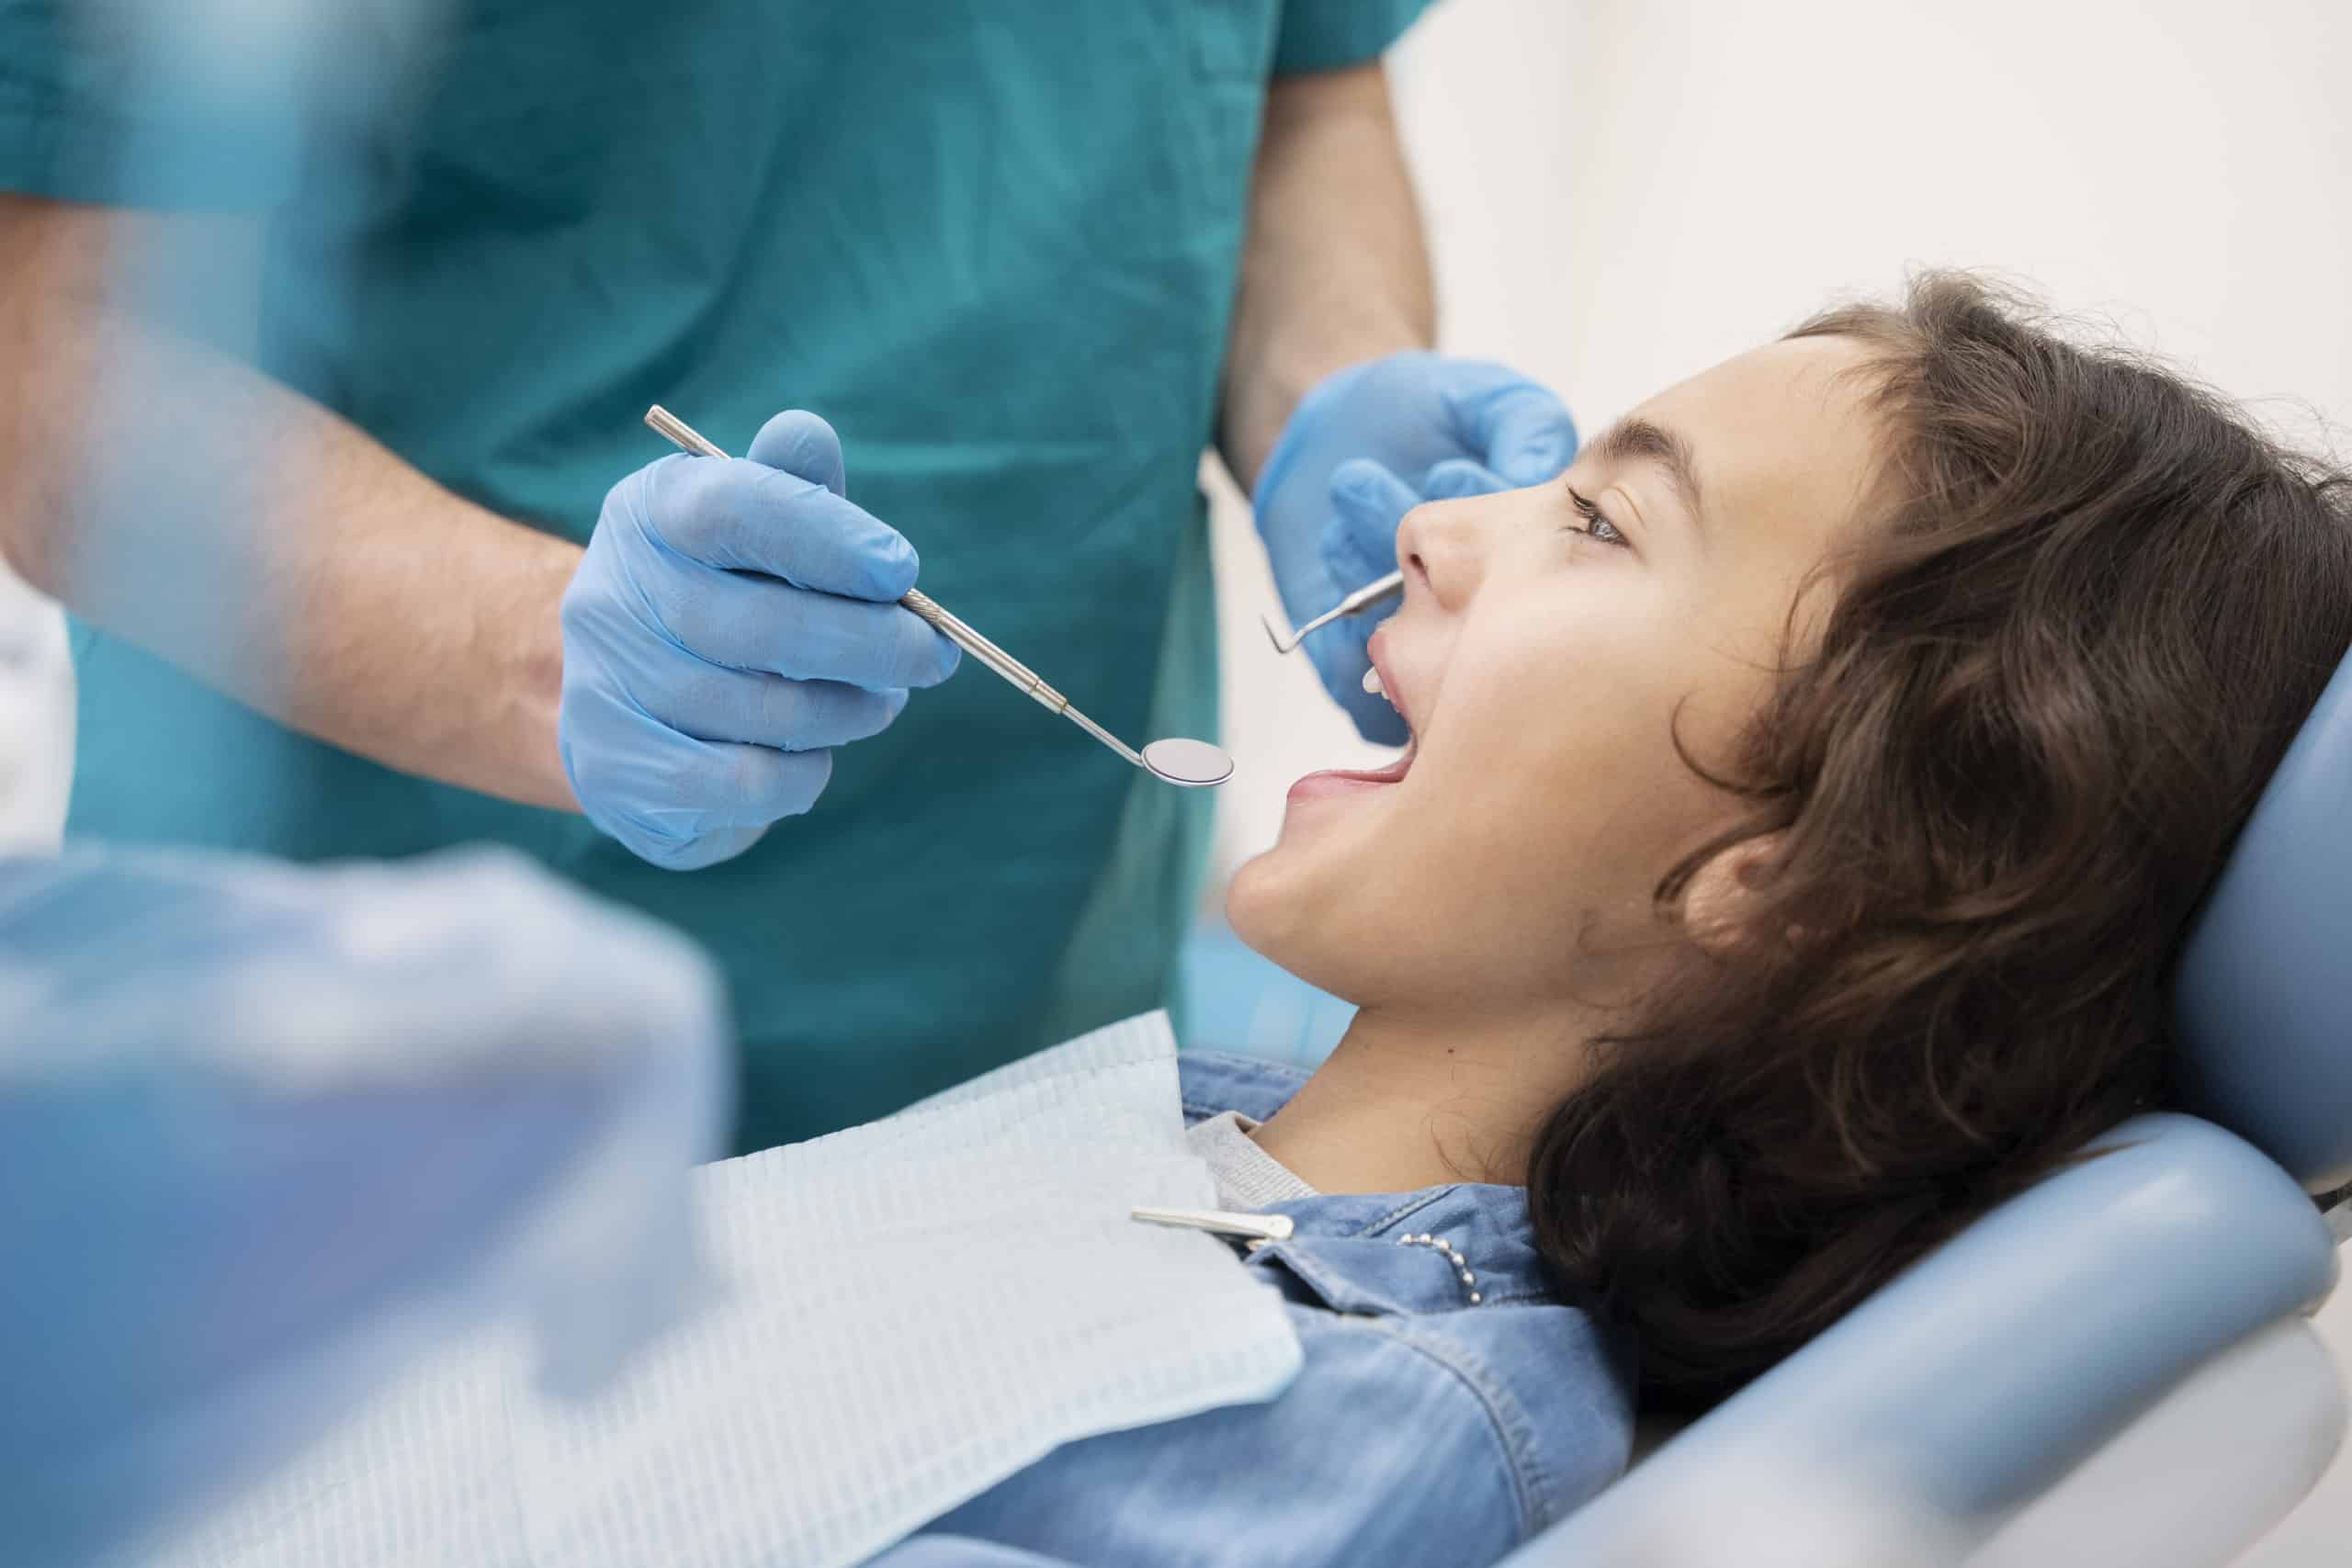 carie-enfant-dentiste-rabat-agdal | Chirurgien Dentiste Orthodontiste - Centre Dentaire Rabat Agdal - Dr Adil Guelzim